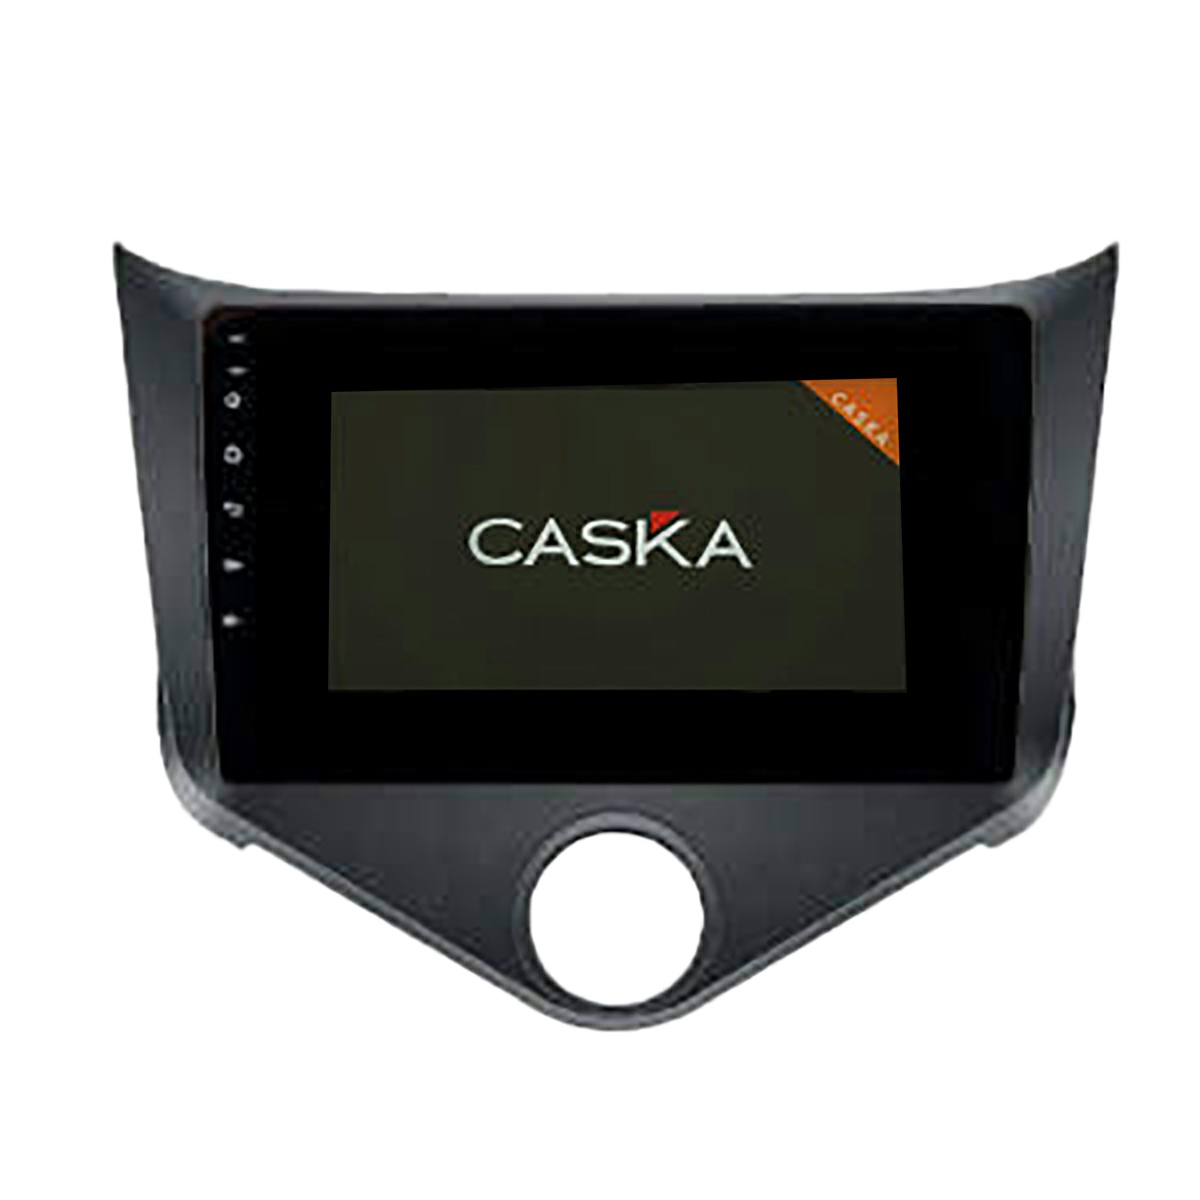 پخش کننده تصویری خودرو کاسکا مدل 2022 برای ام وی ام 315